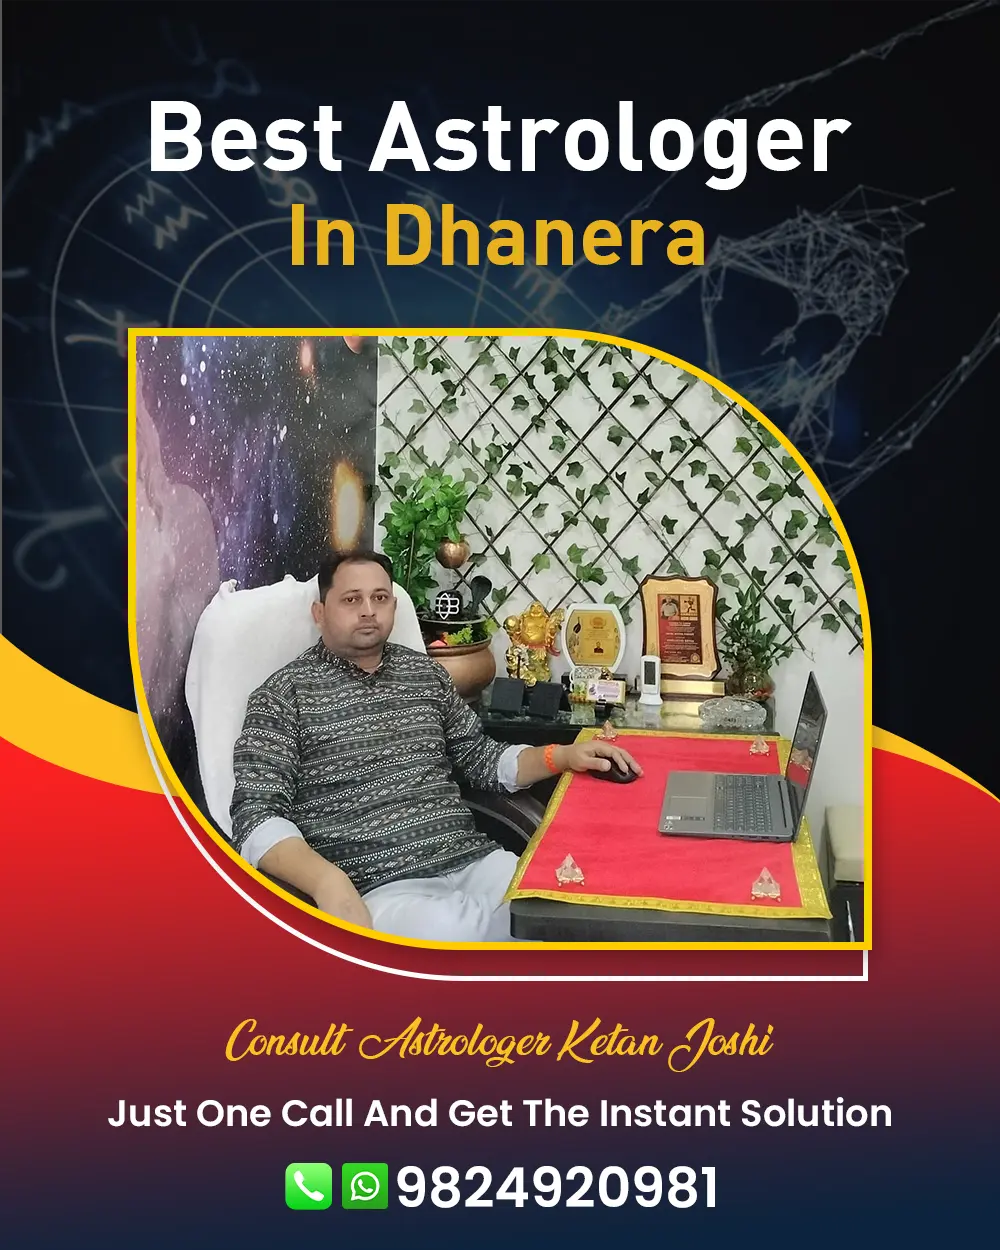 Best Astrologer In Dhanera